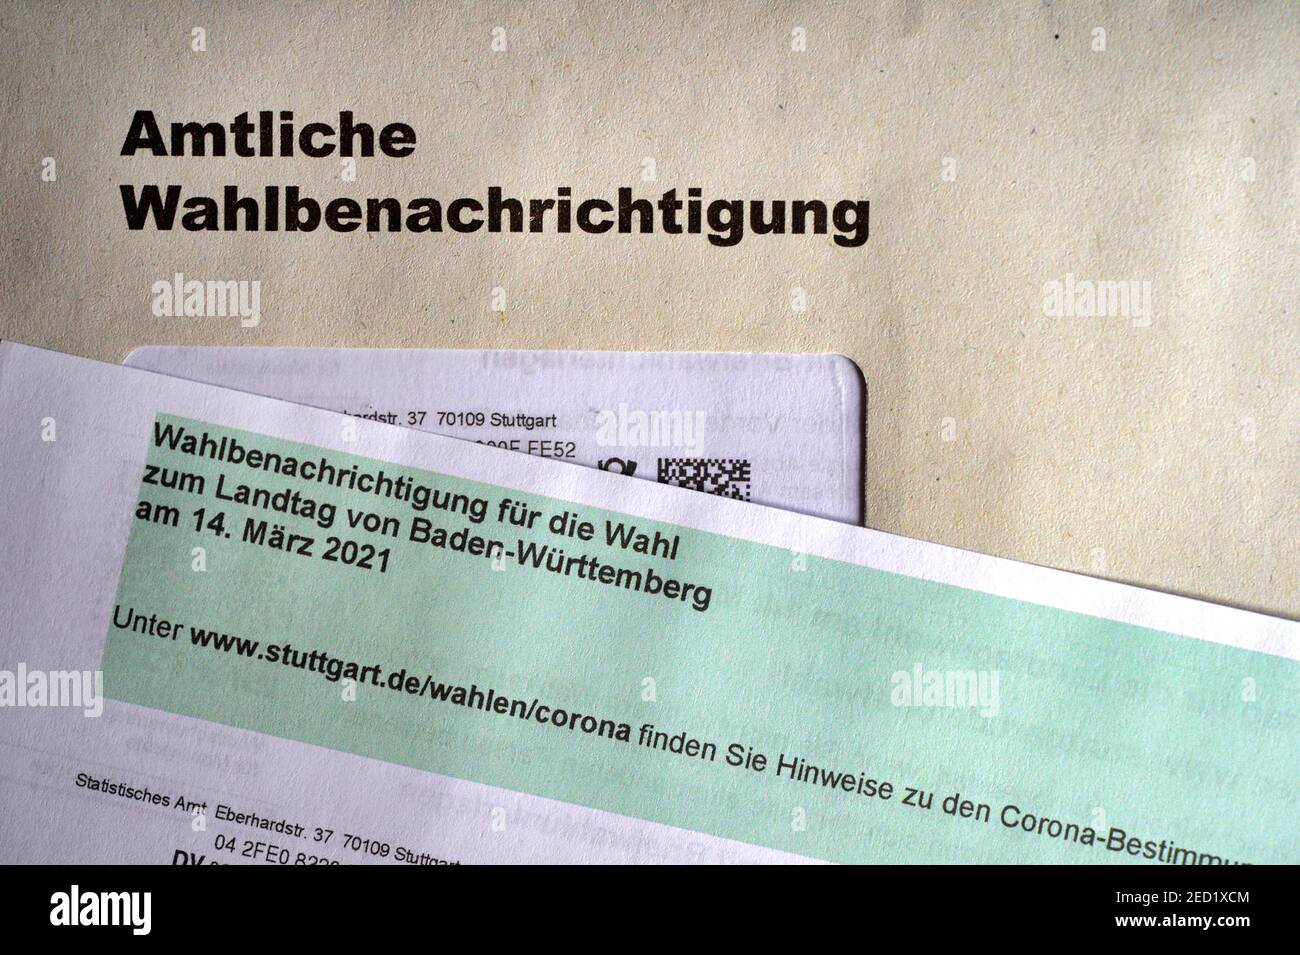 Notification officielle des élections, Landtag Election Baden-Wuerttemberg le 14.03.2021, Allemagne Banque D'Images